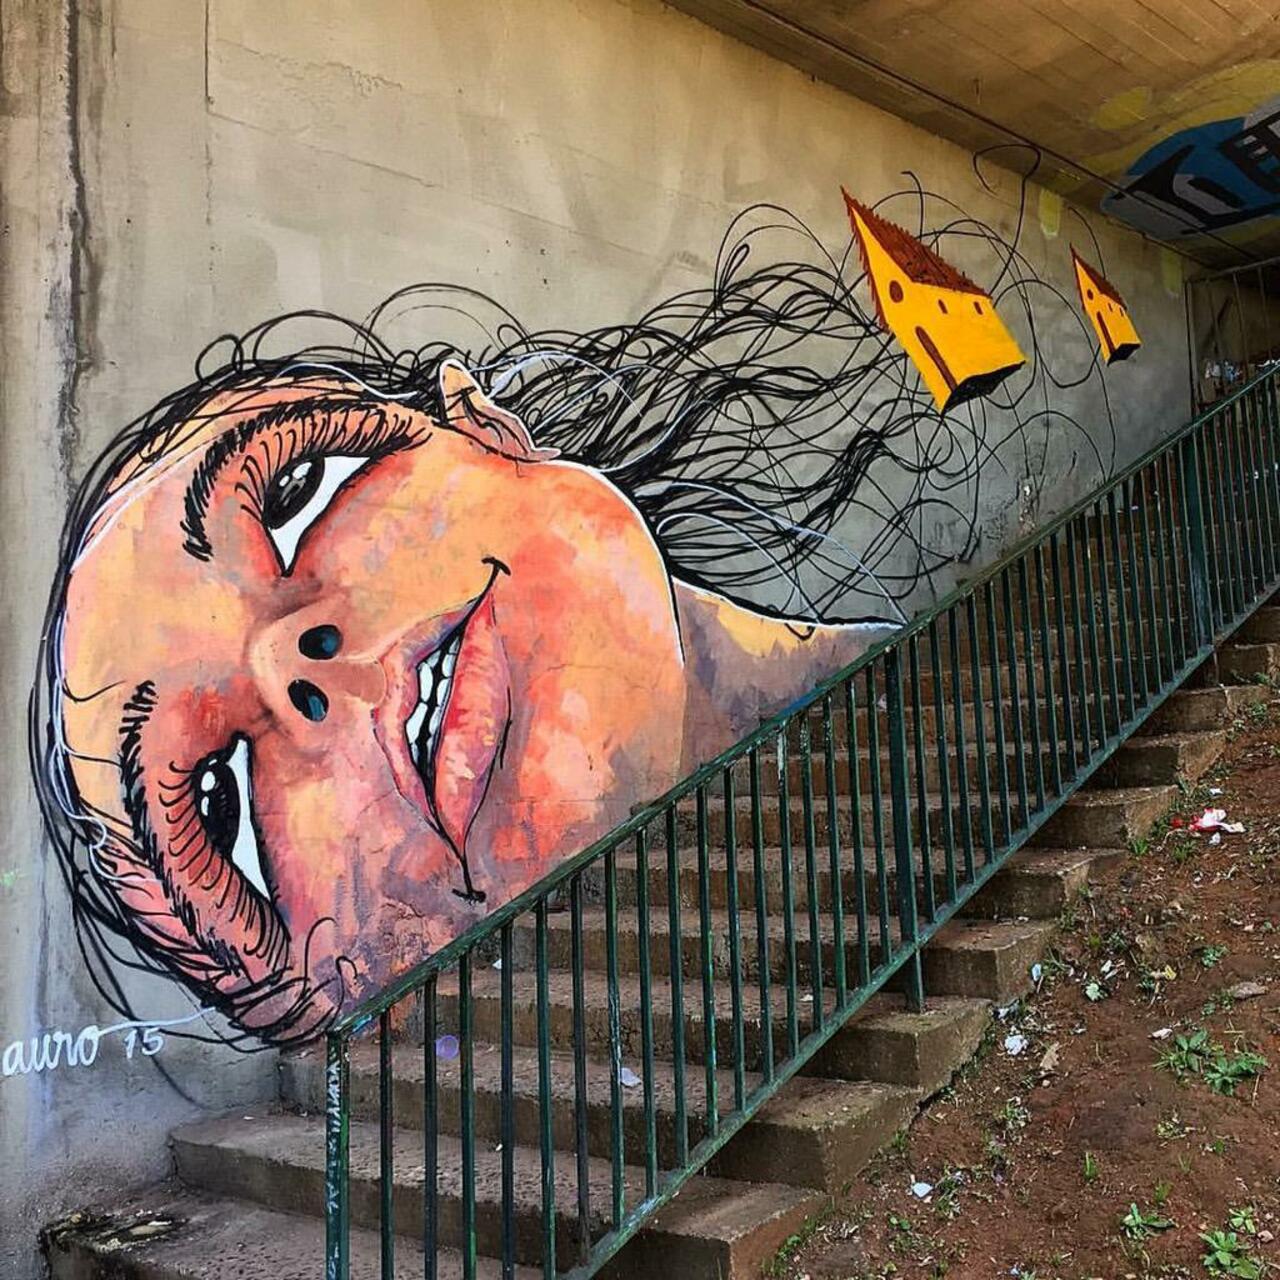 Street Art by Reveracidade in São Paulo 

#art #graffiti #mural #streetart http://t.co/uktsb0QevD